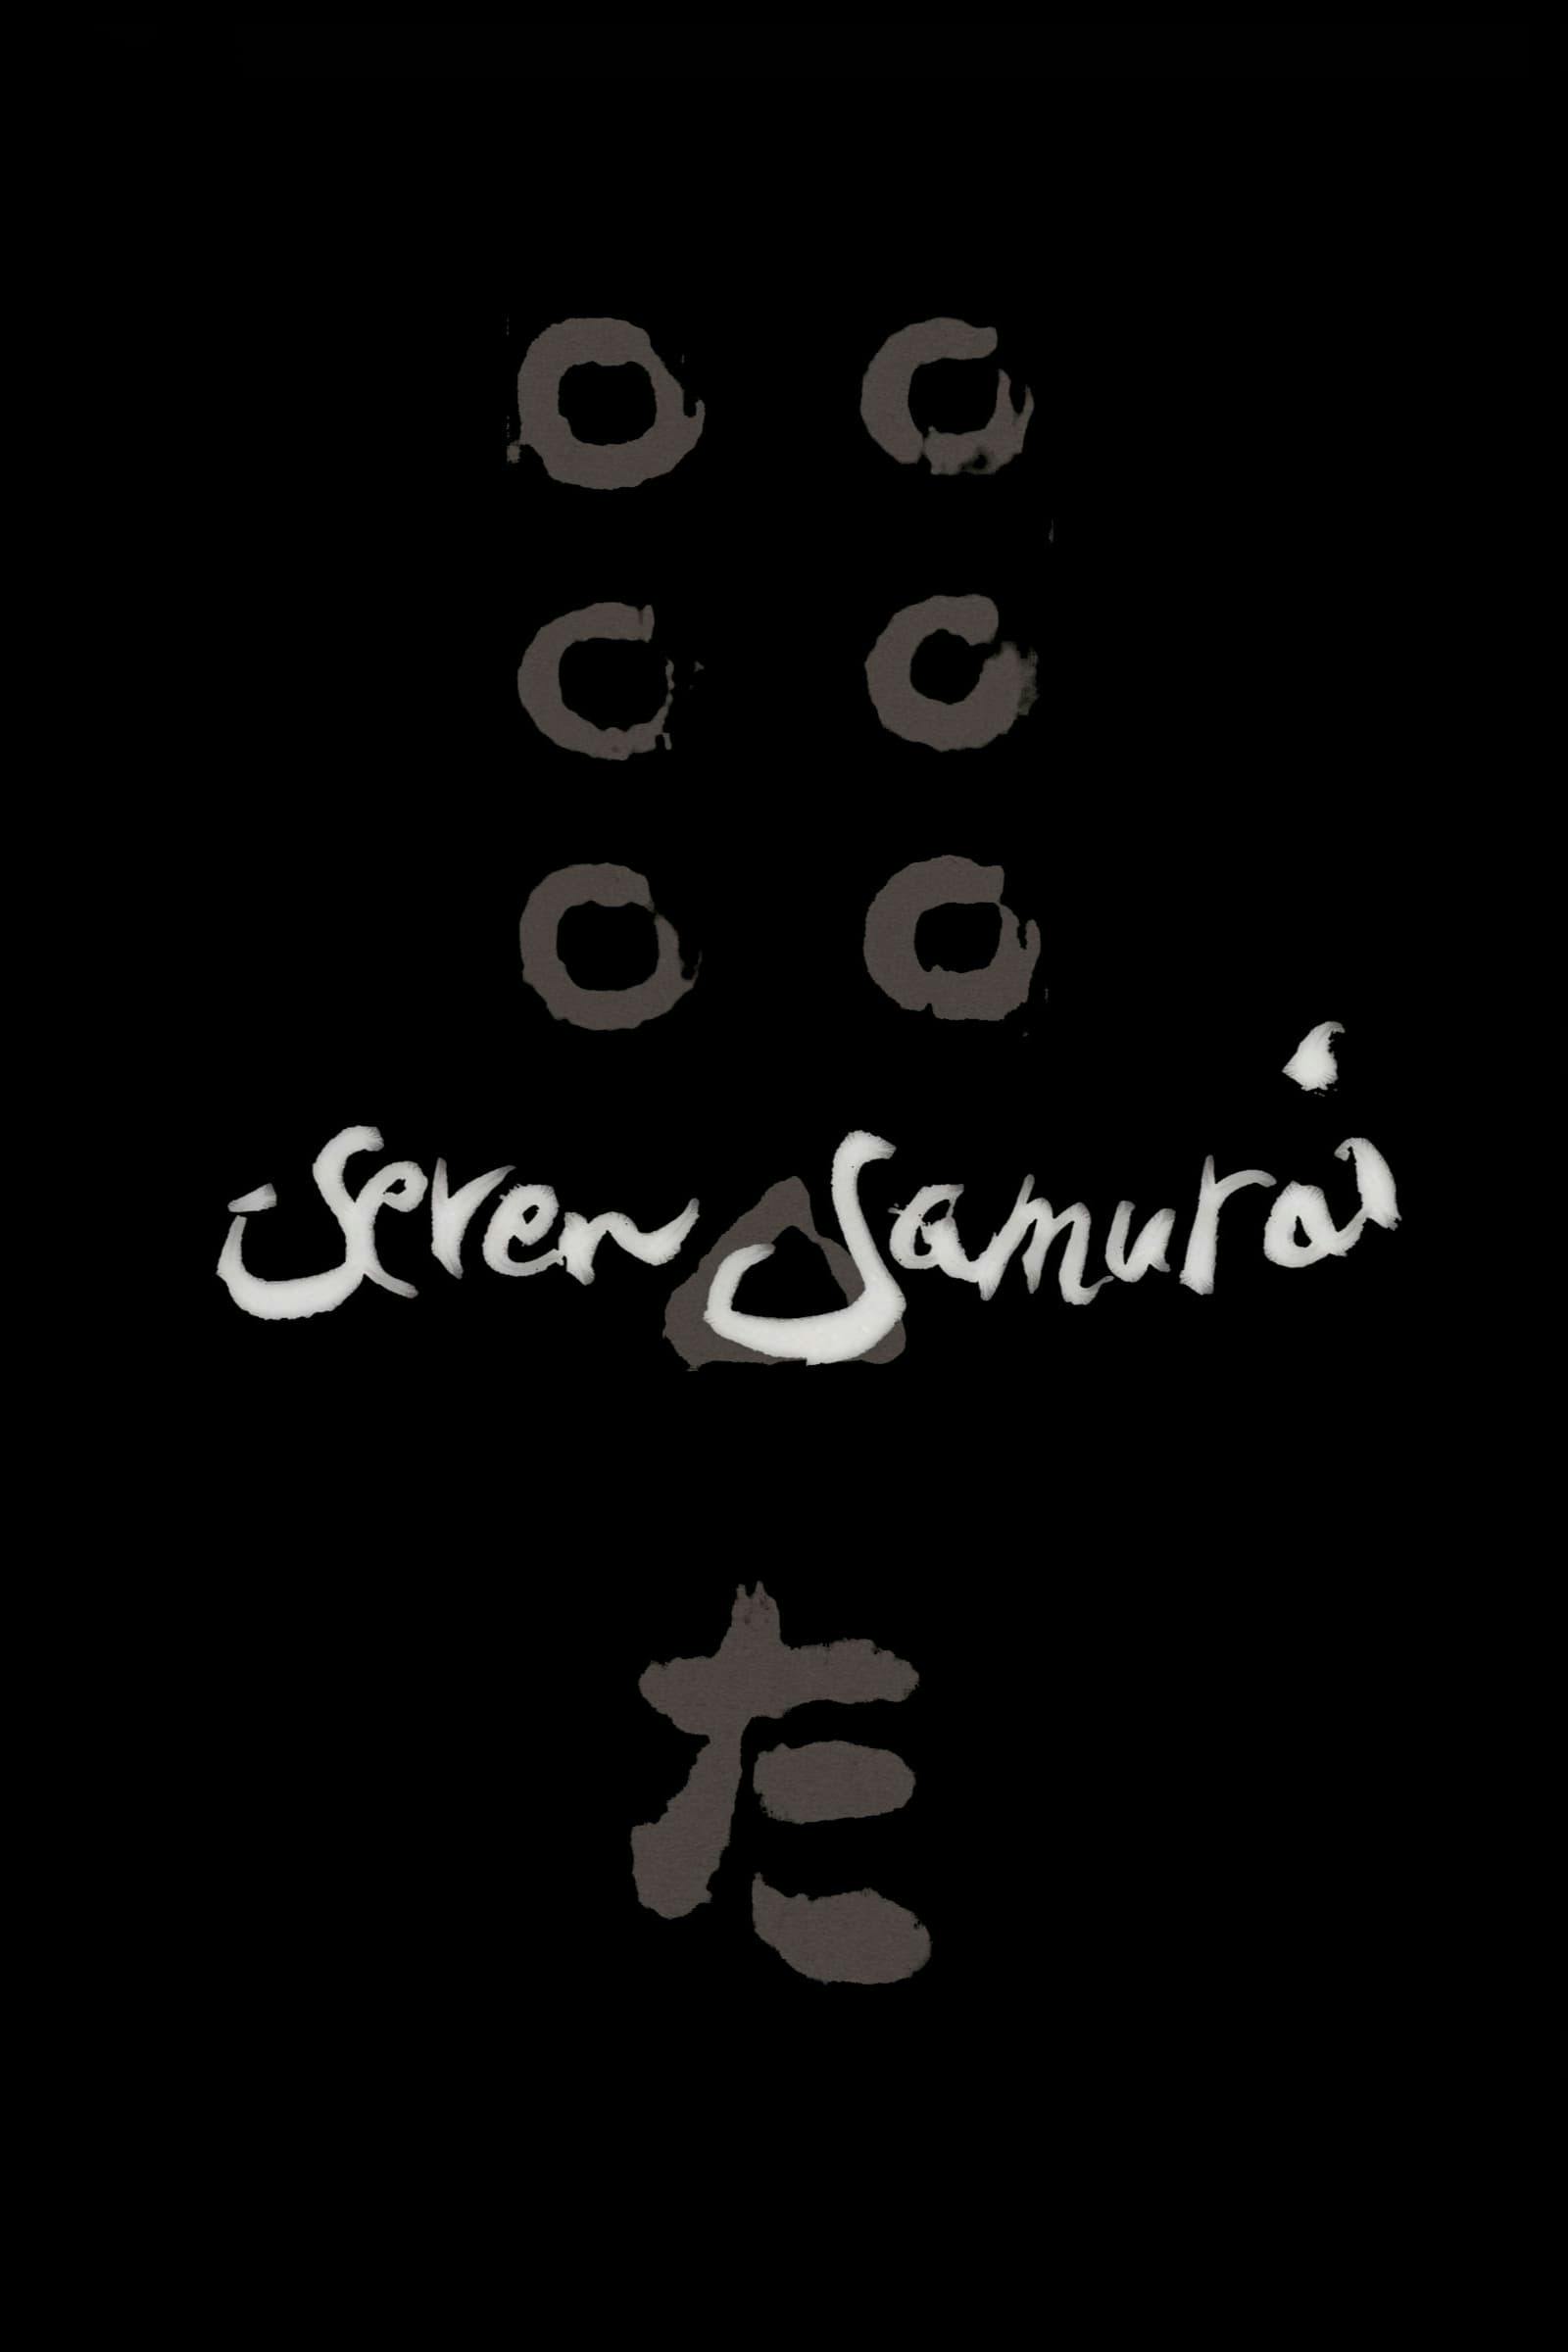 Movie poster of "Seven Samurai"